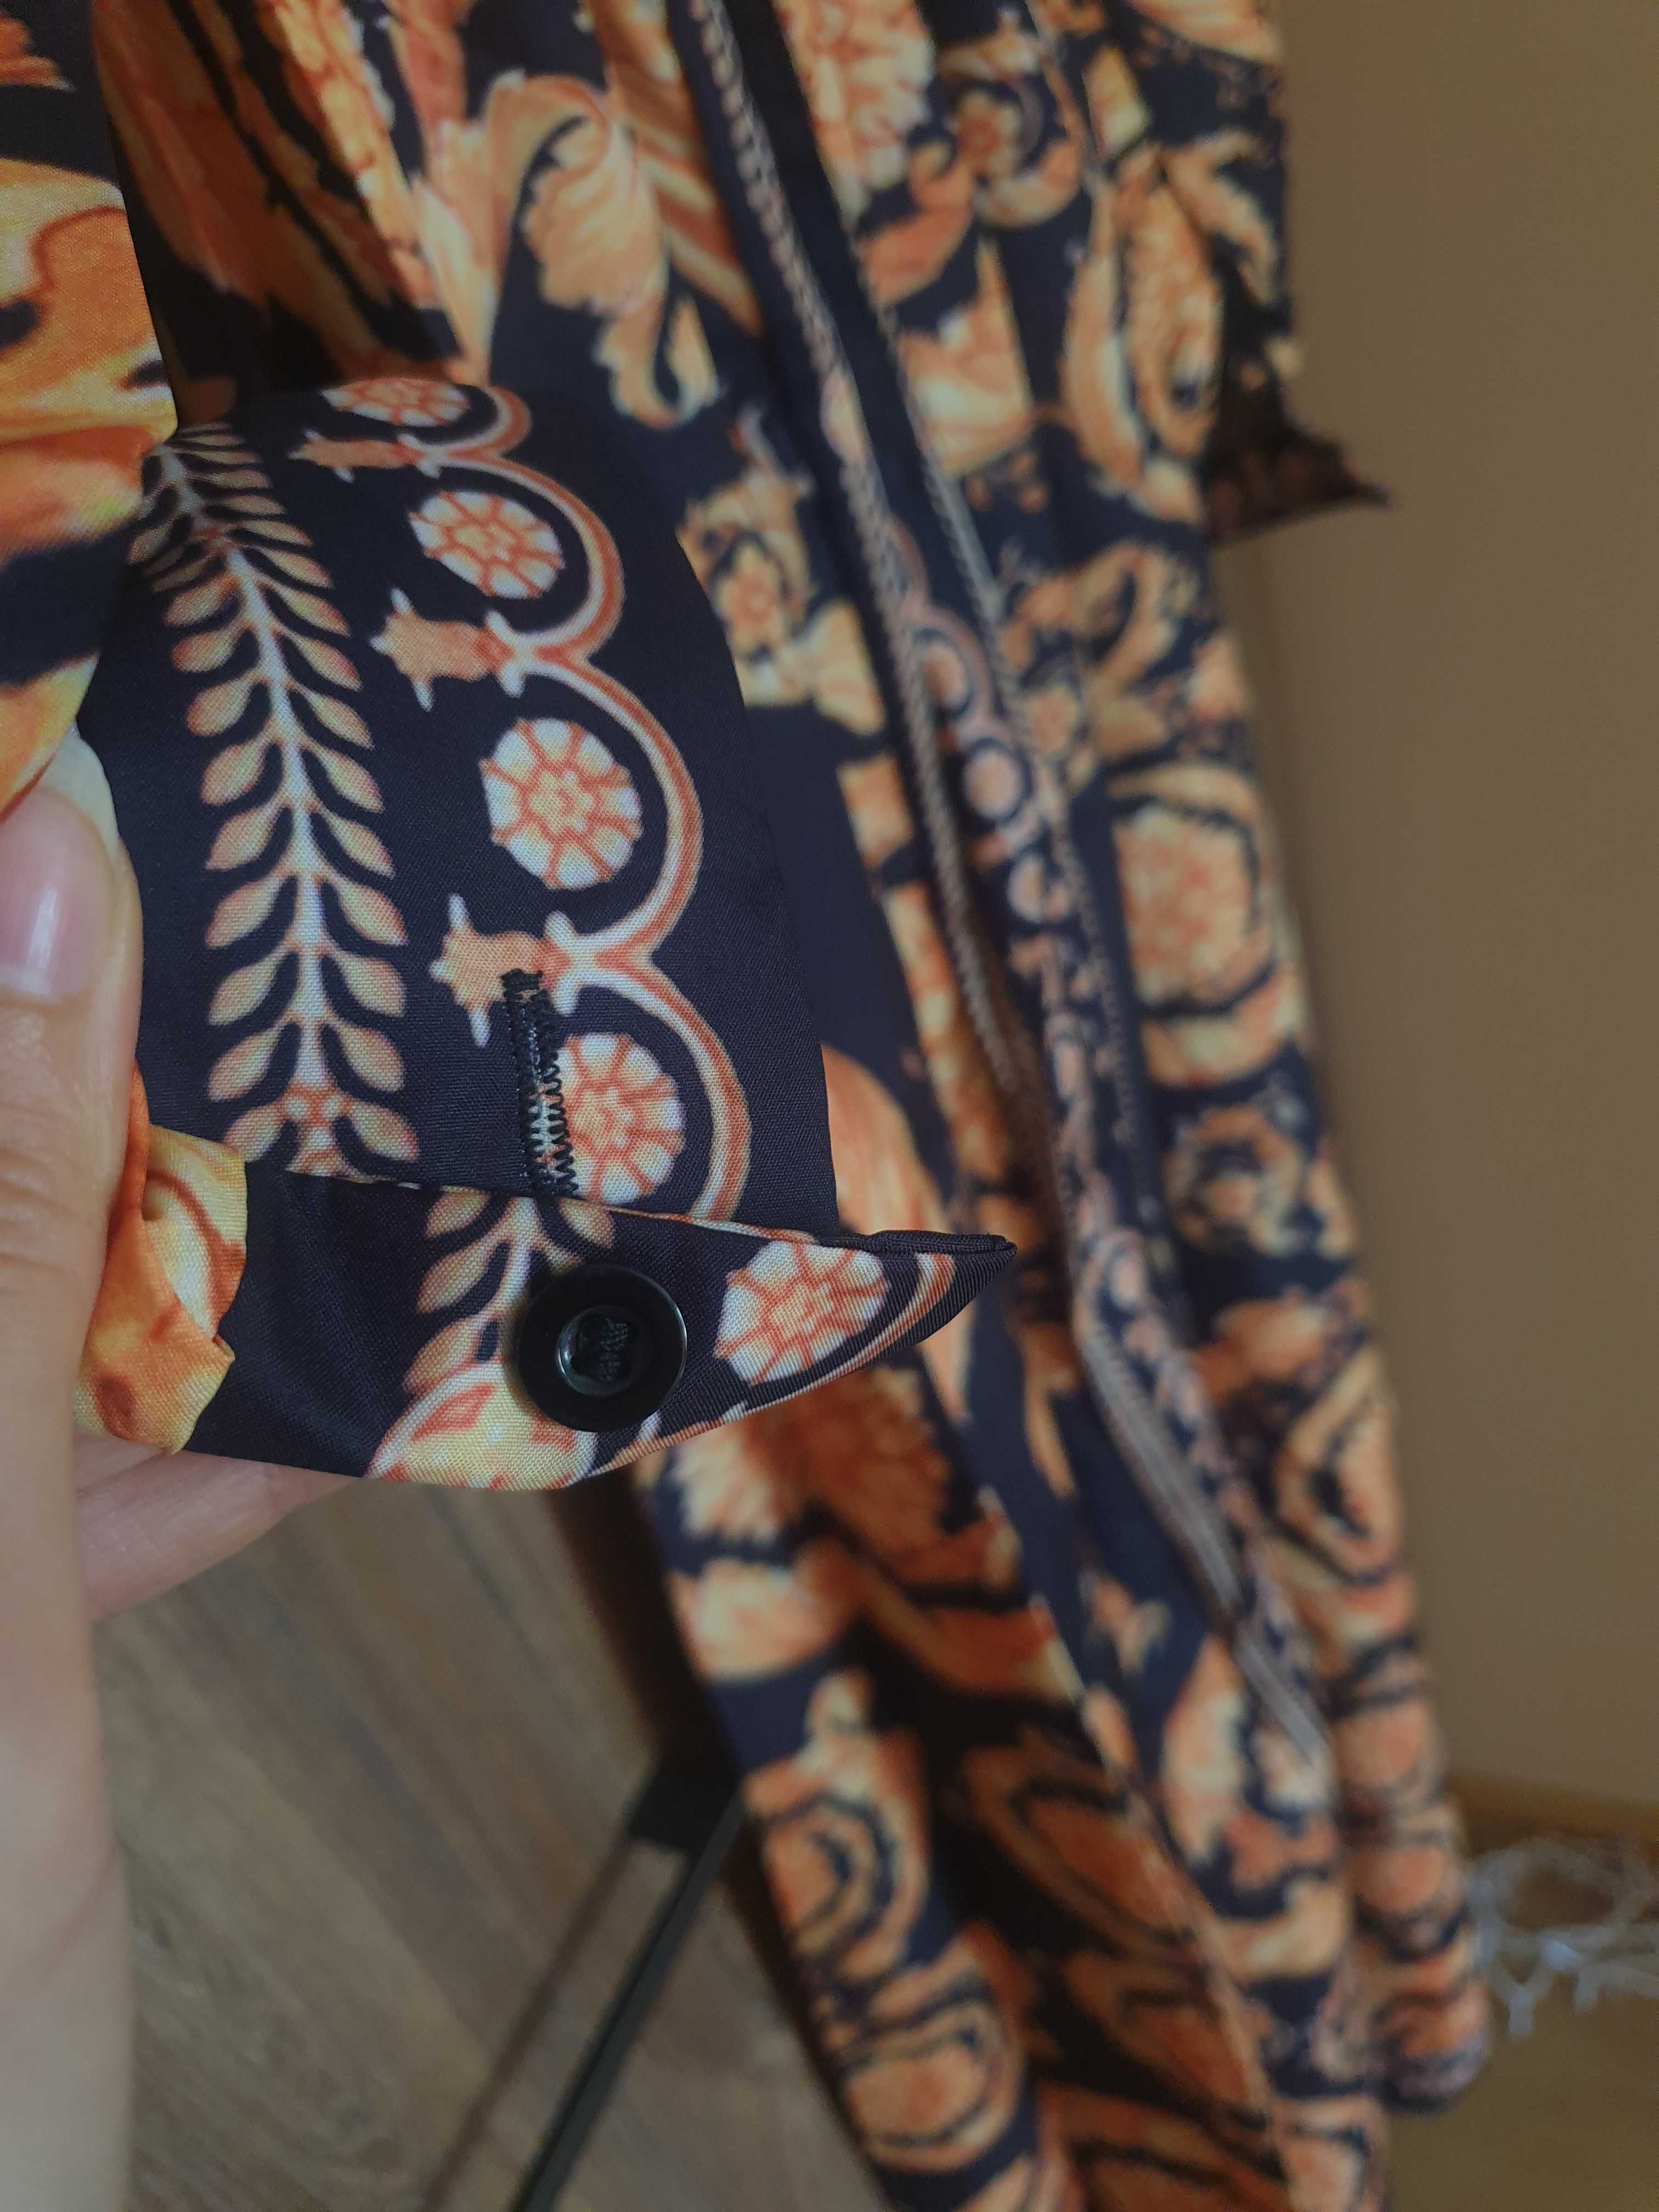 Boho dluga suknia z rozporkiem instagram orient arabska tunika